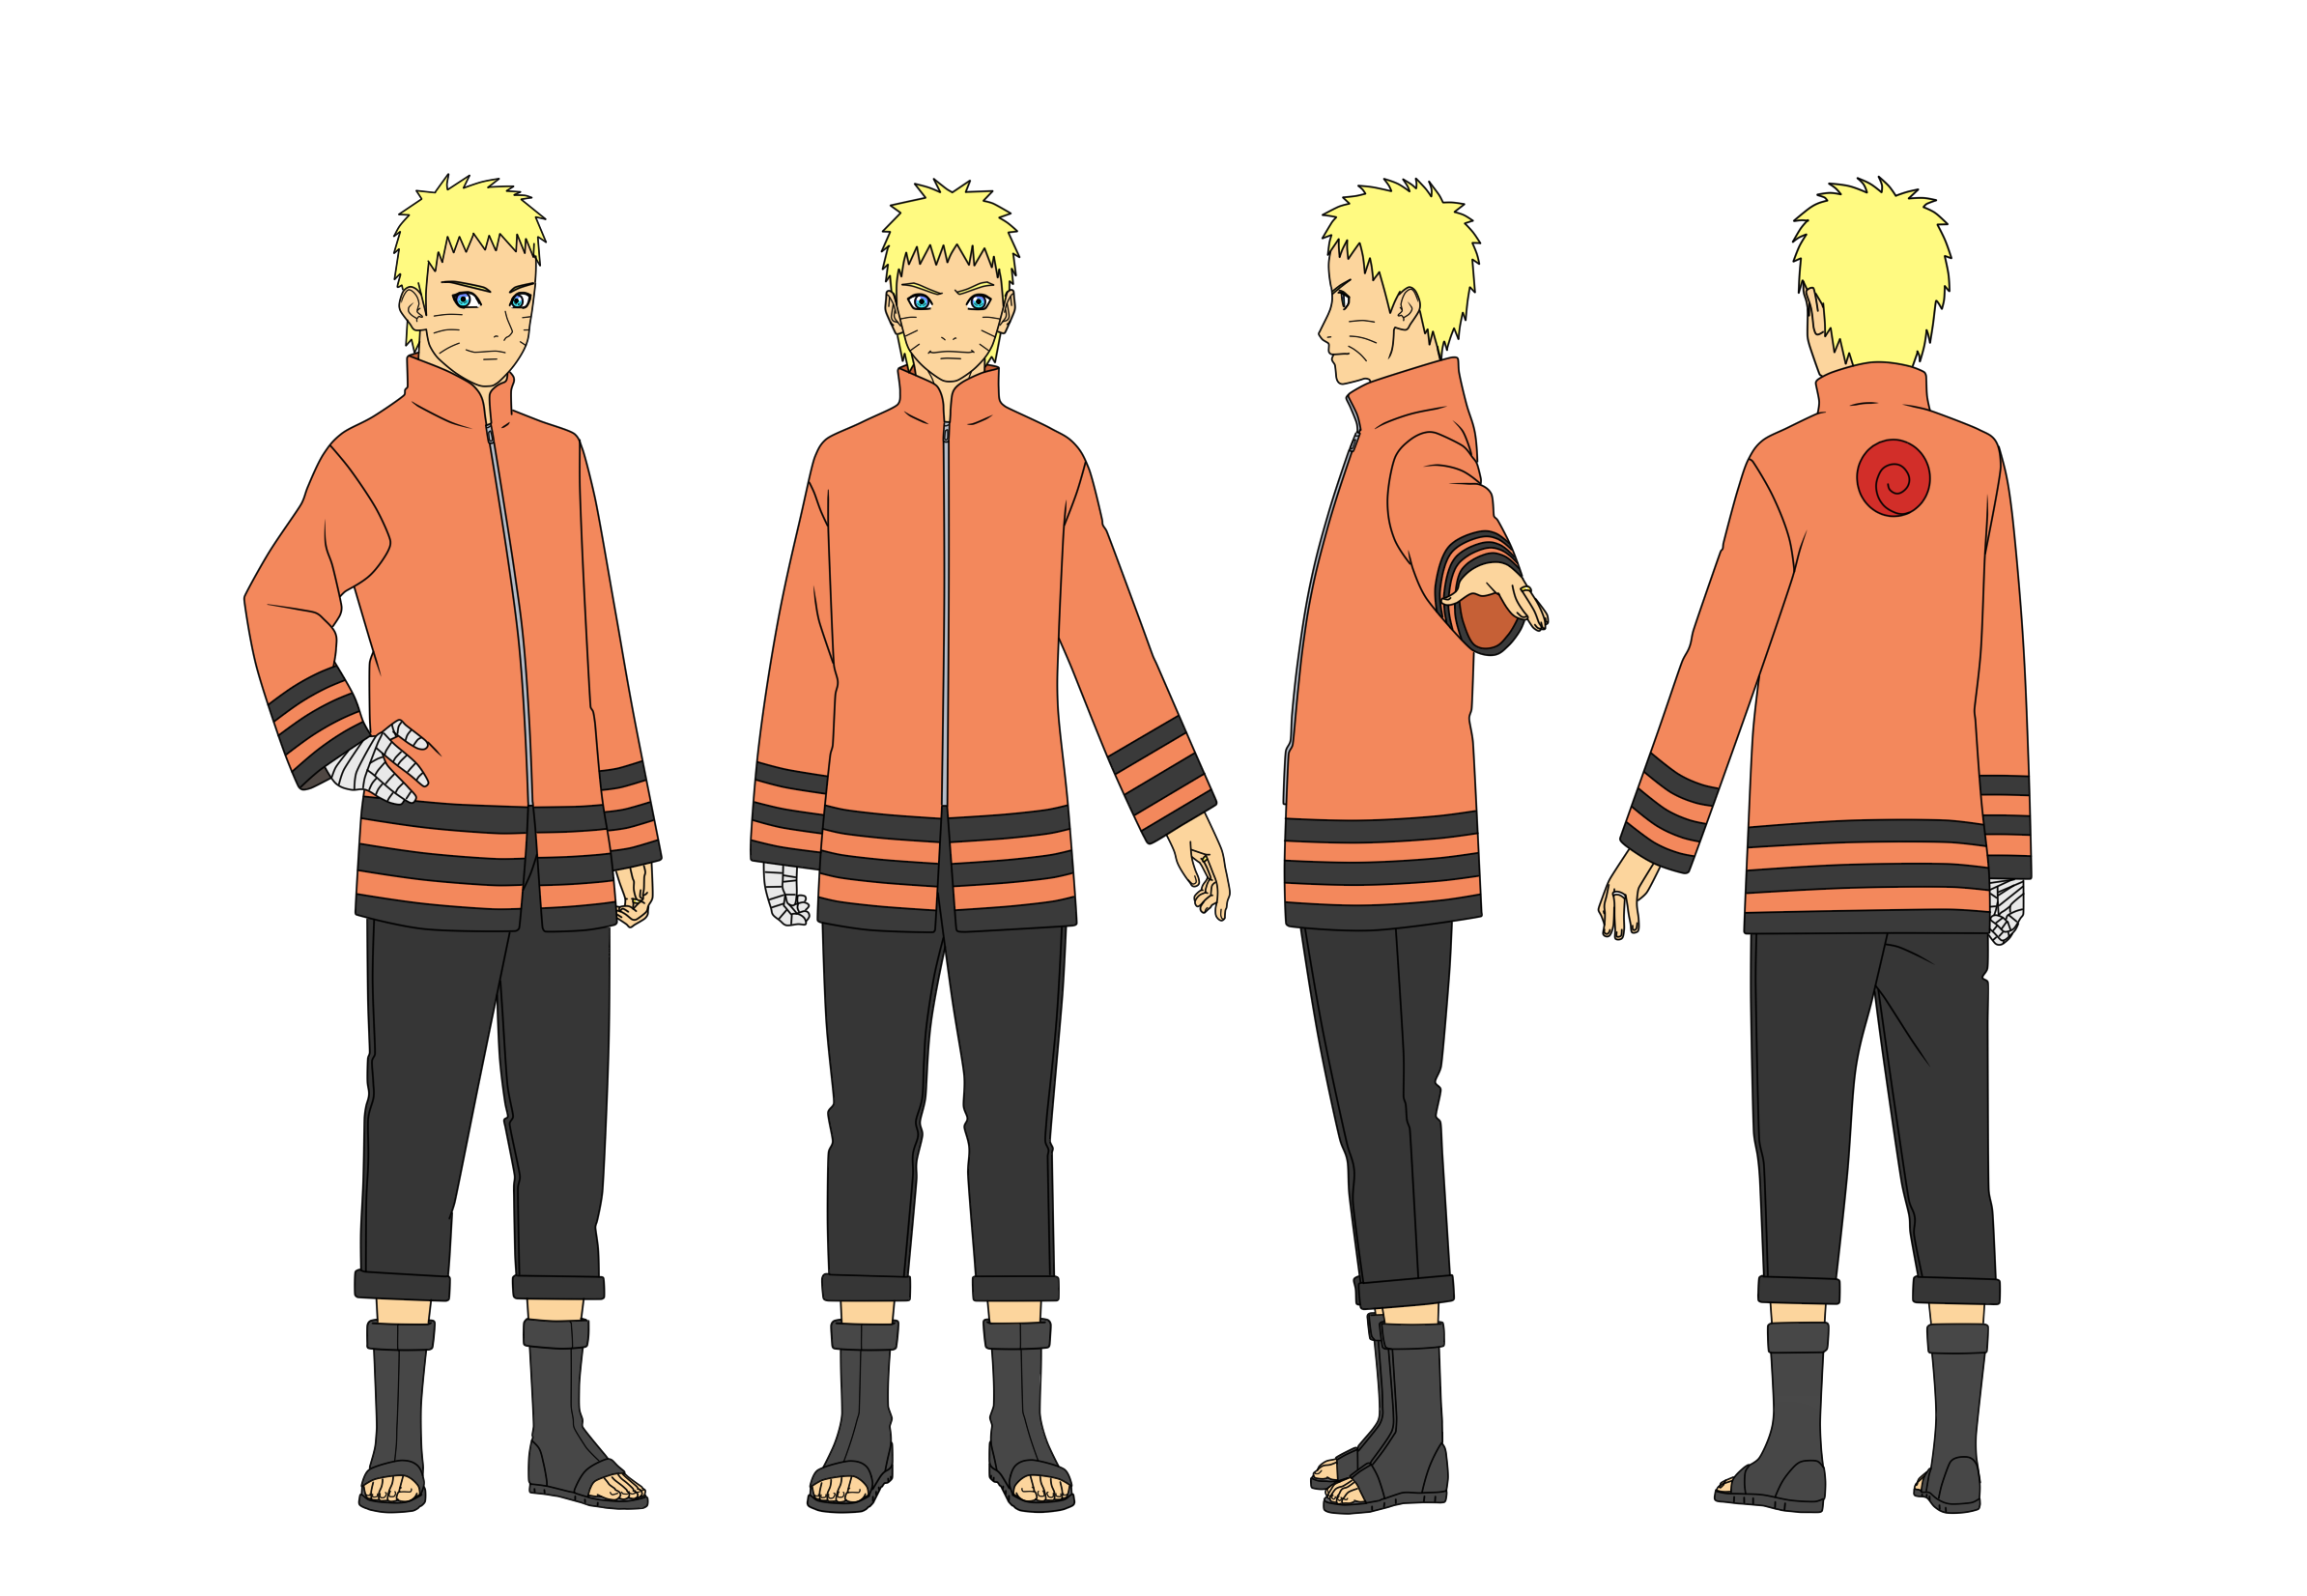 Naruto OC: Tsuji Ringo by hotkage on DeviantArt